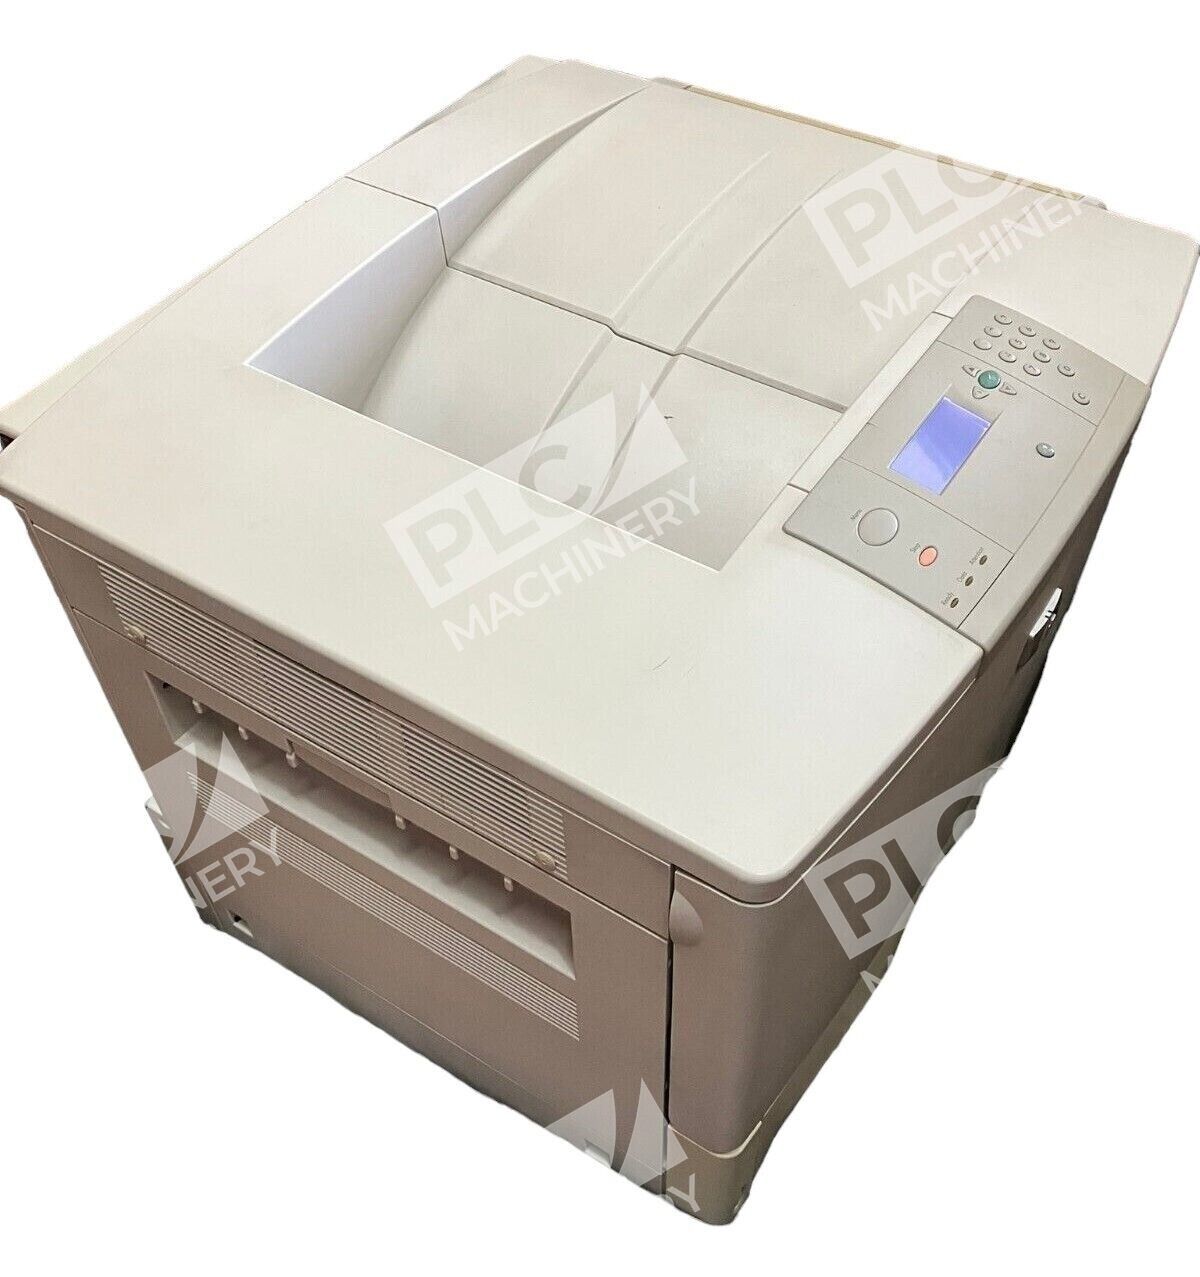 HP Q3723A LaserJet 9050DN Printer (No Black Cartridge)